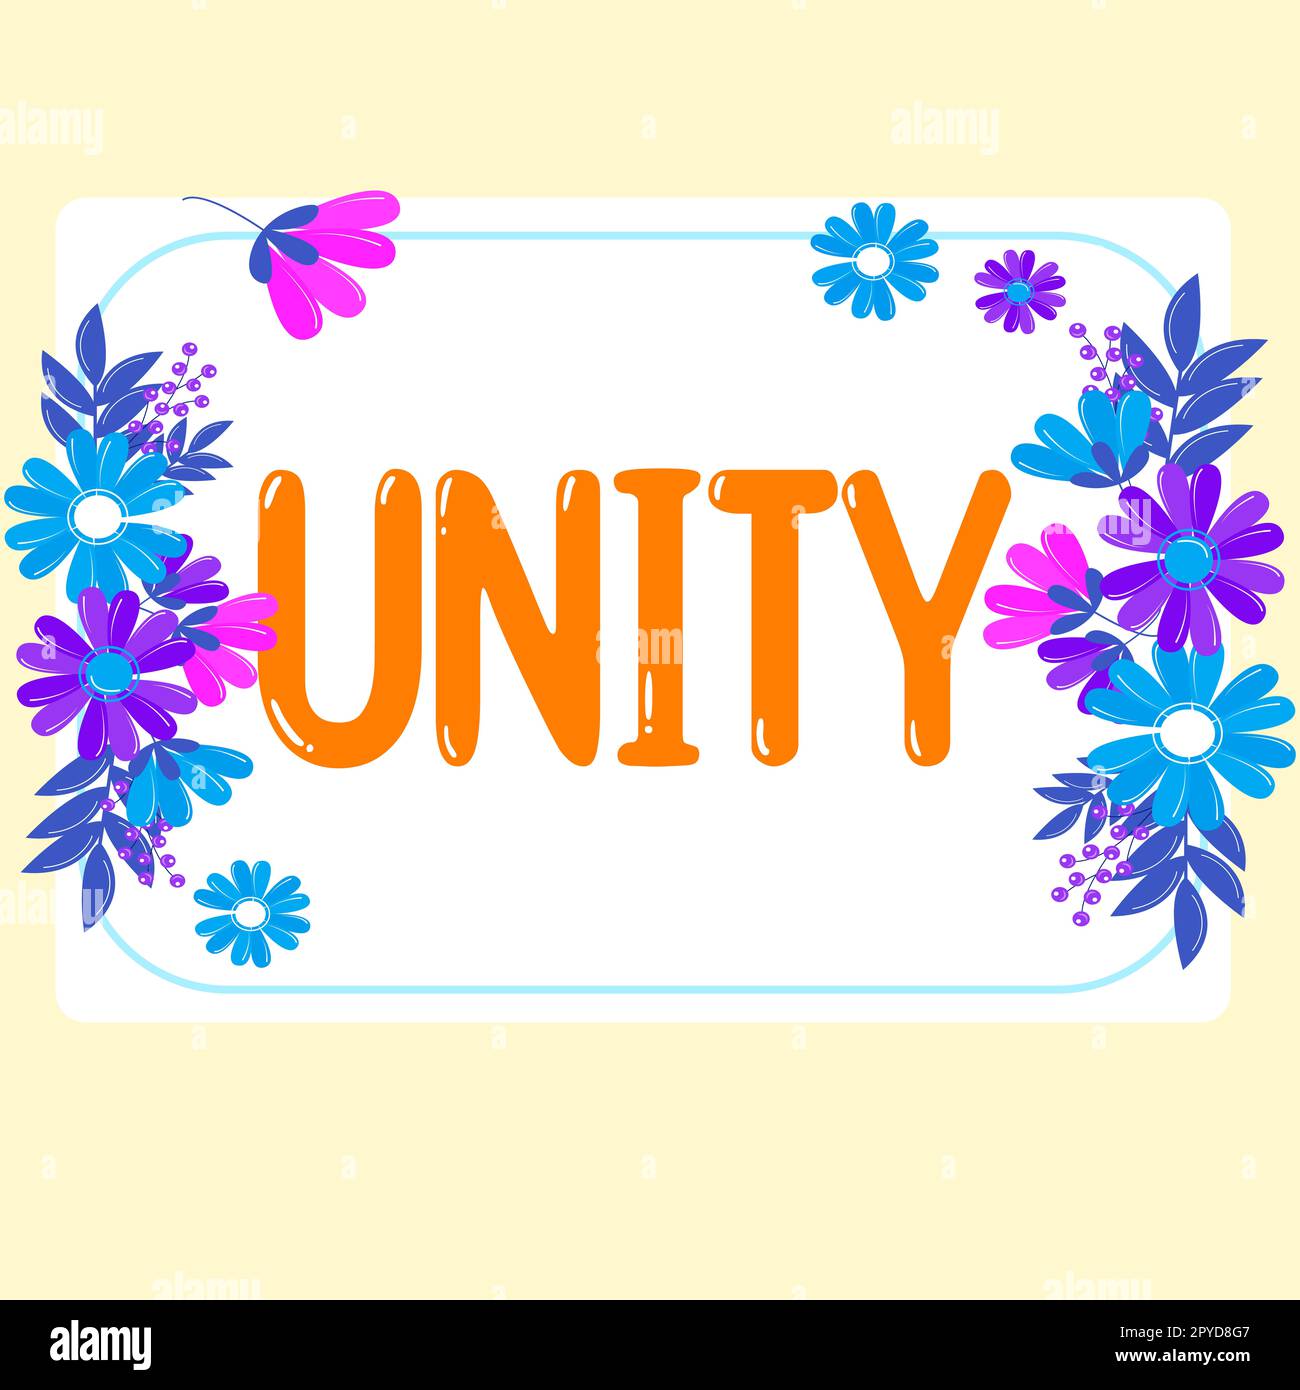 Affichage conceptuel Unity. Idée d'entreprise état d'être unis ou rejoint dans son ensemble en devenant une seule personne Banque D'Images